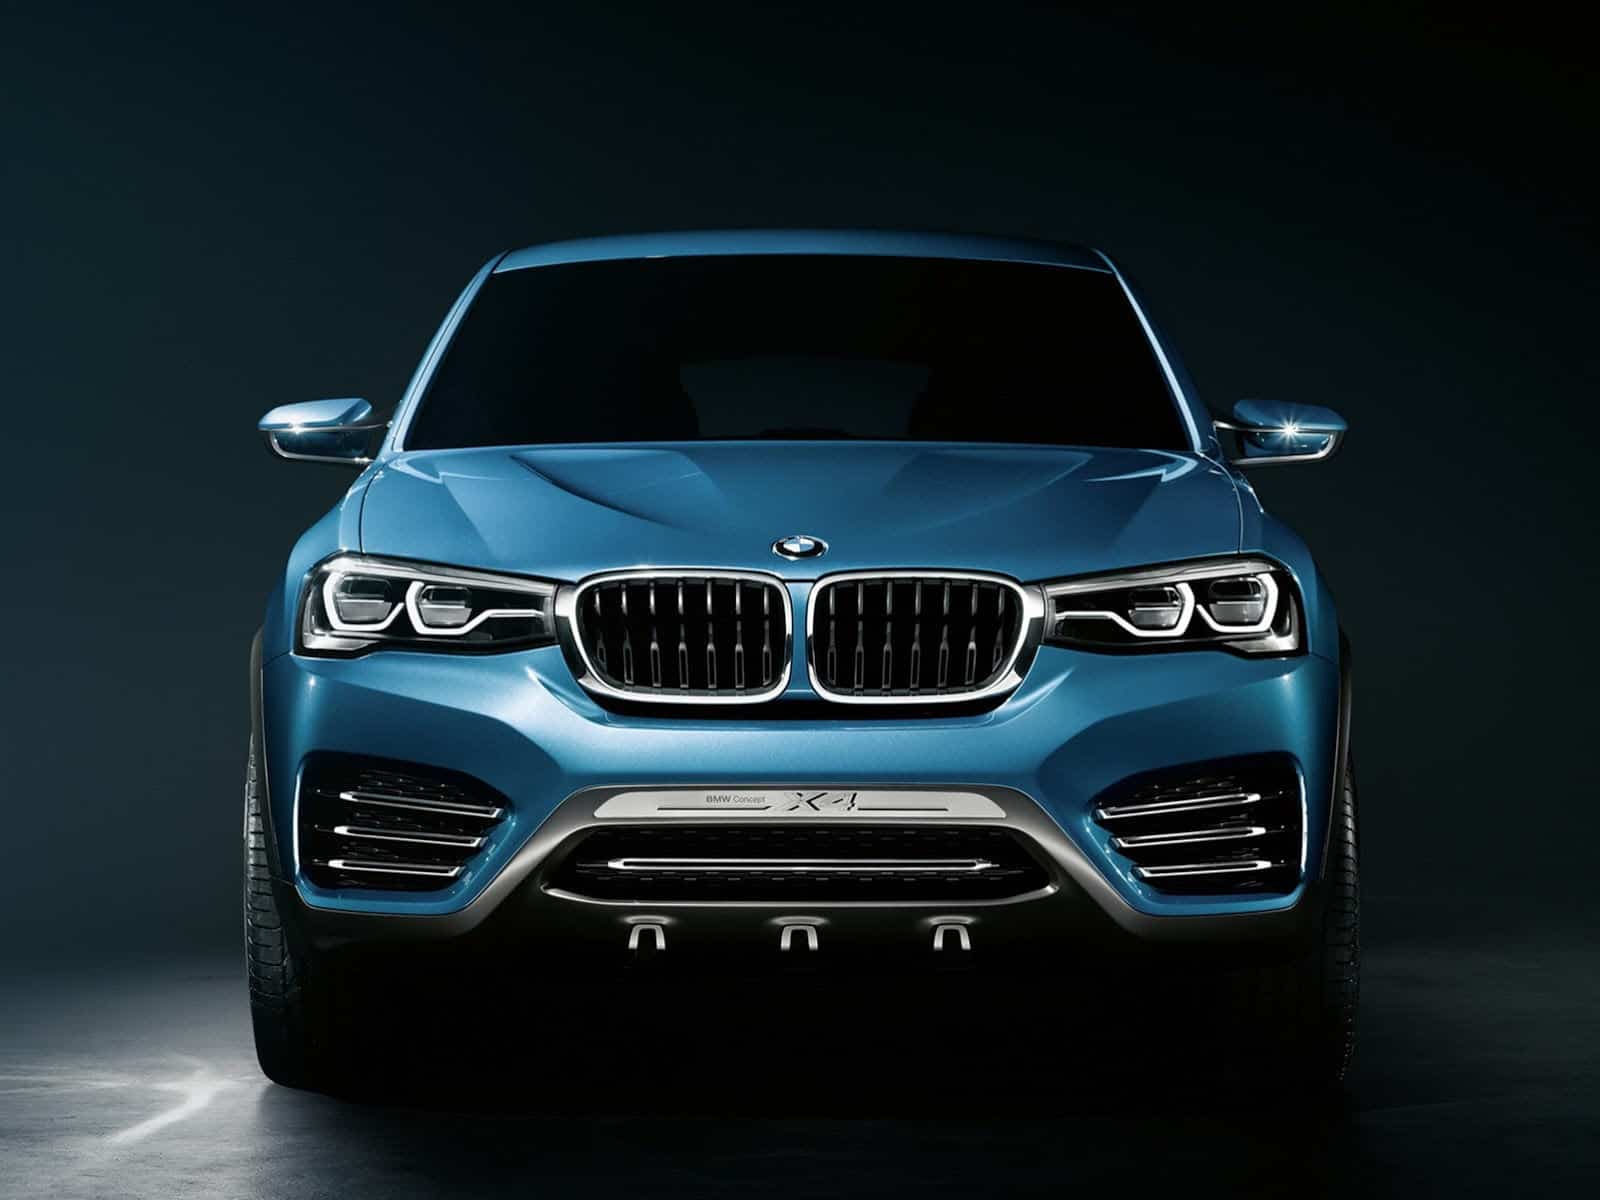 2014 BMW X4 Concept